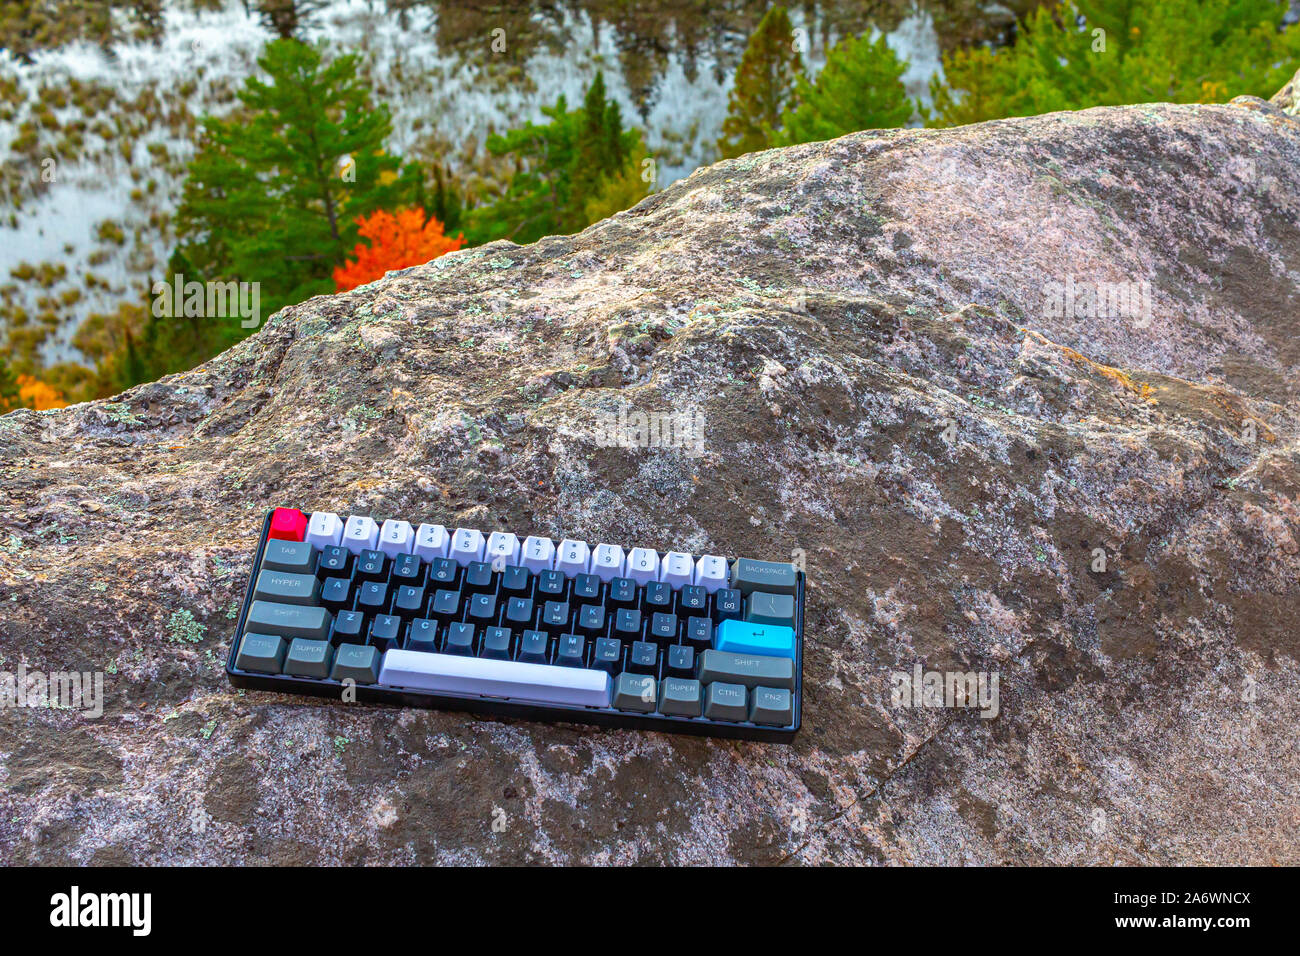 Un ordinateur avec clavier mécanique gris, blanc, noir, rouge et des  touches bleu semble un peu hors de place sur le rocher d'une falaise  au-dessus d'un étang et arbres Photo Stock -